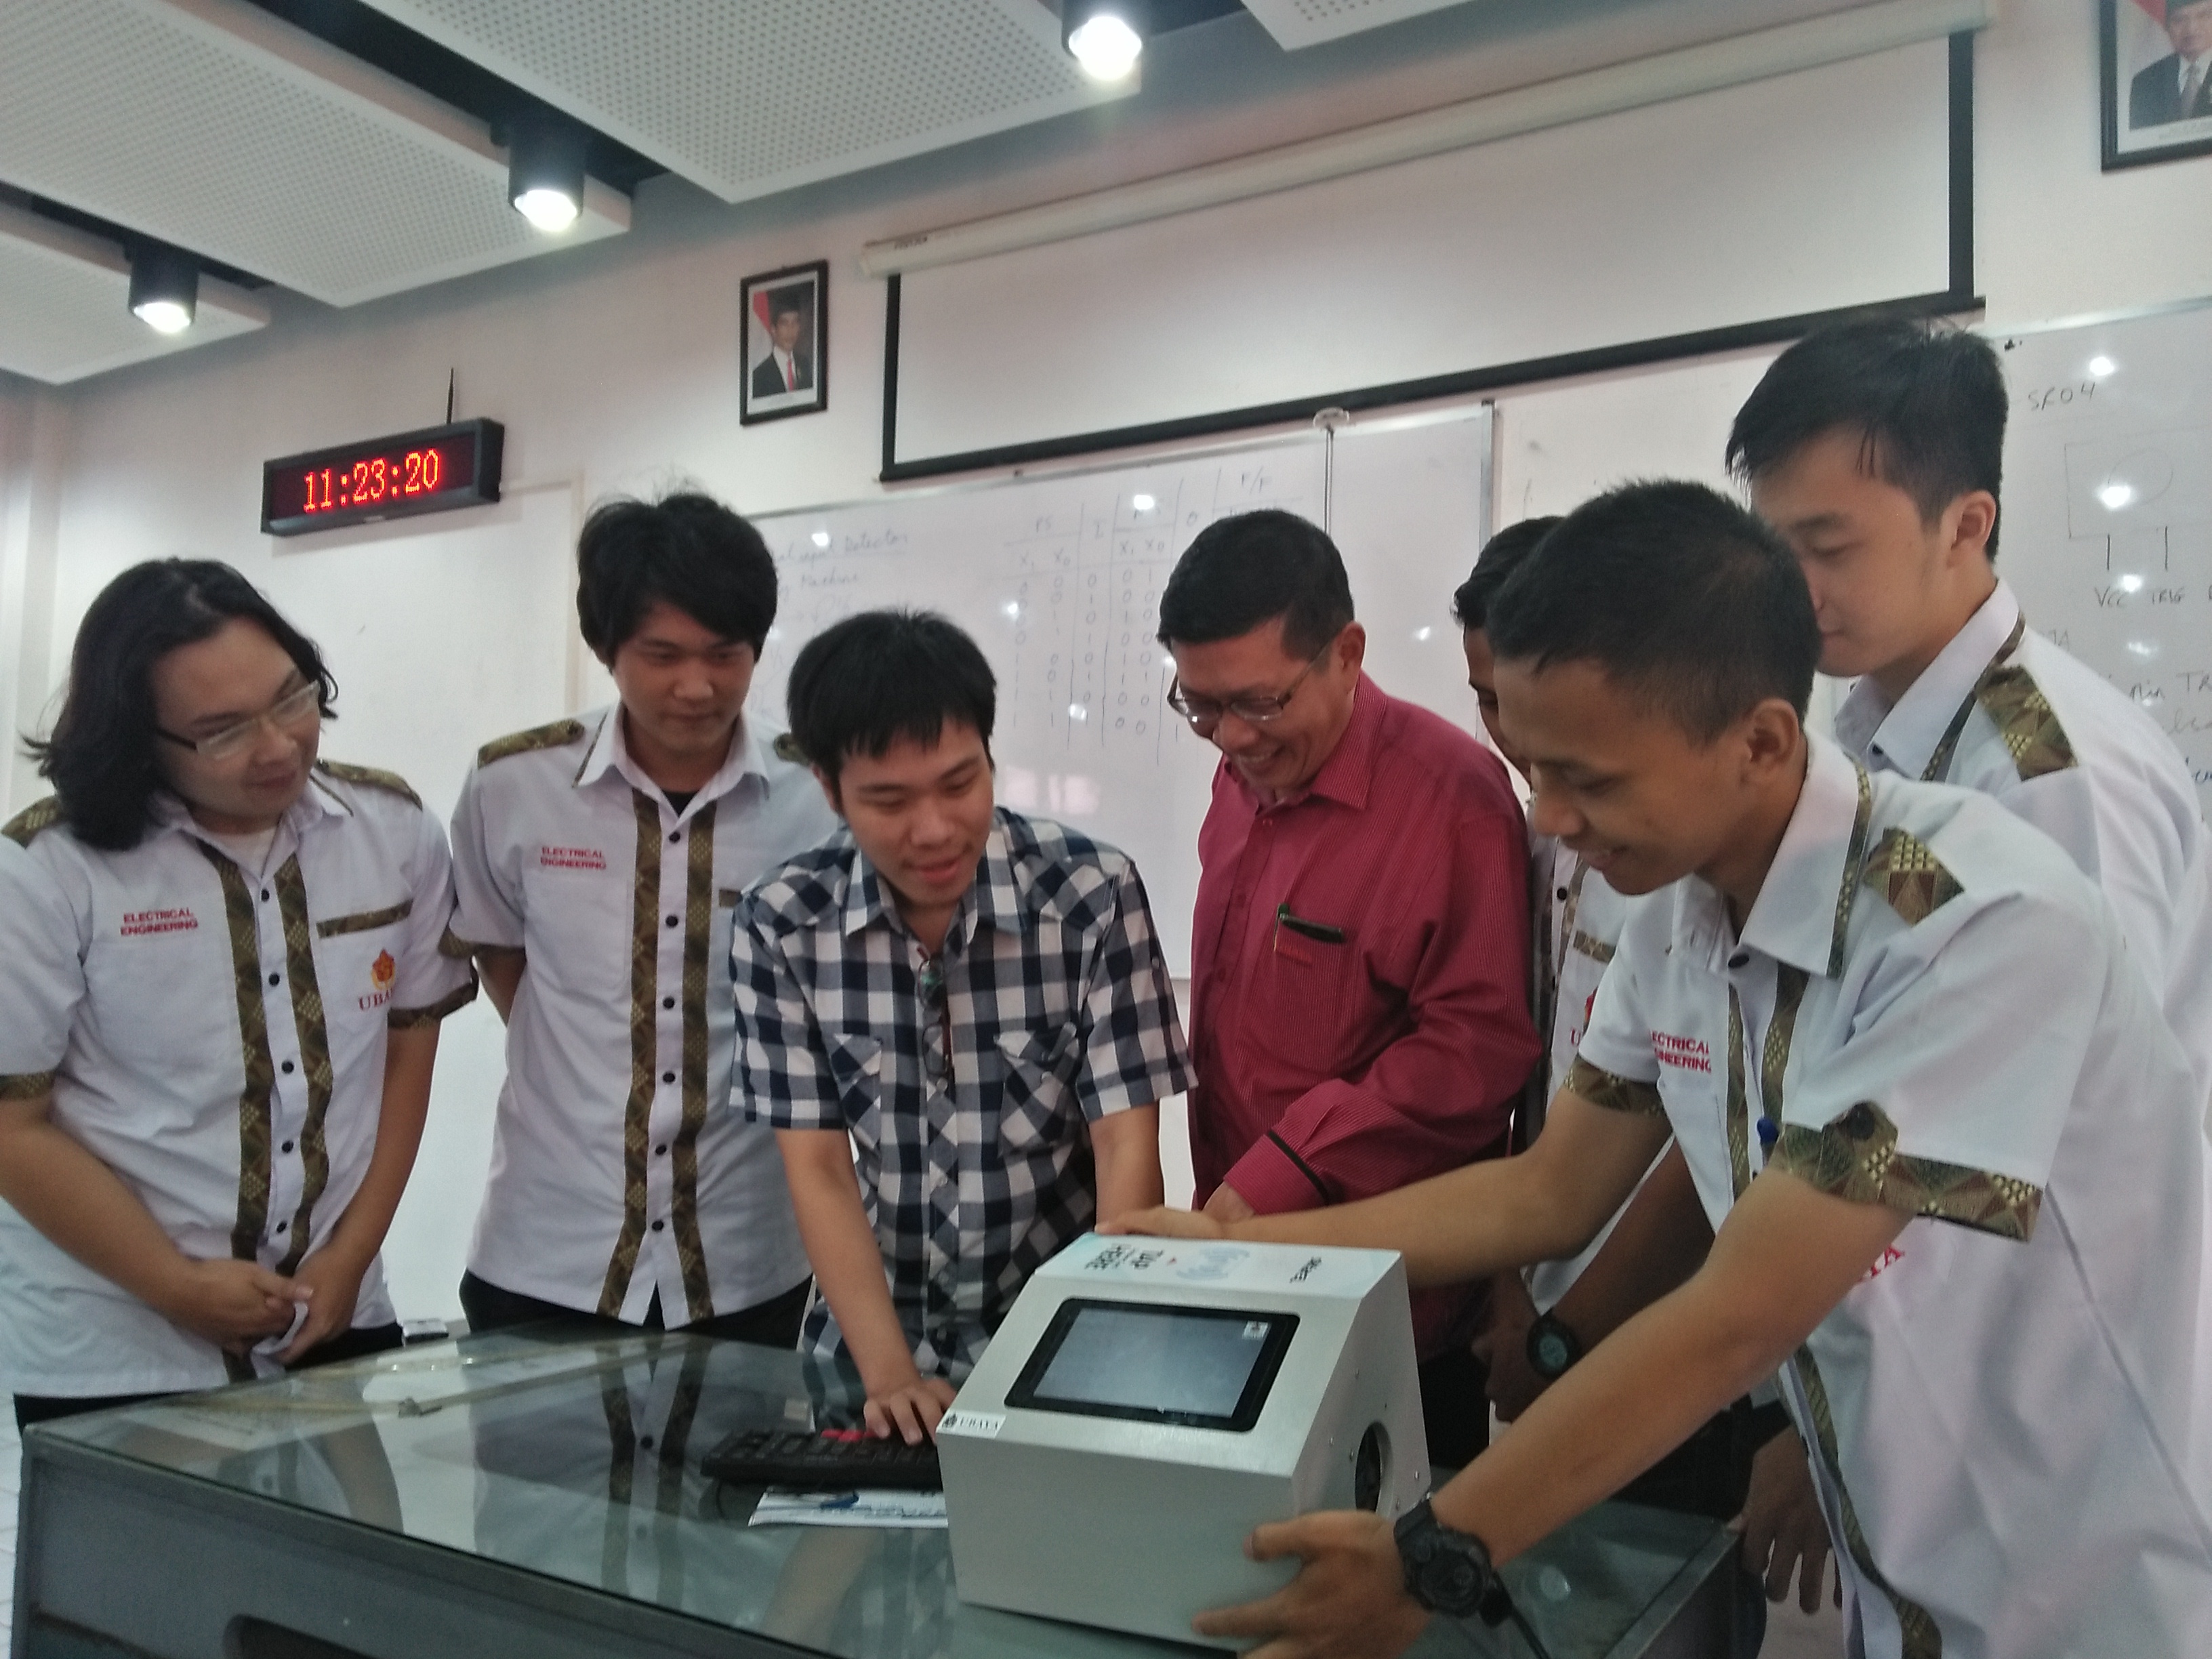 Tim Era Eru Teus bersama dosen pembimbing, Susilo Wibowo menunjukkan inovasi Sikarel. (Foto: Amanah/ngopibareng.id)